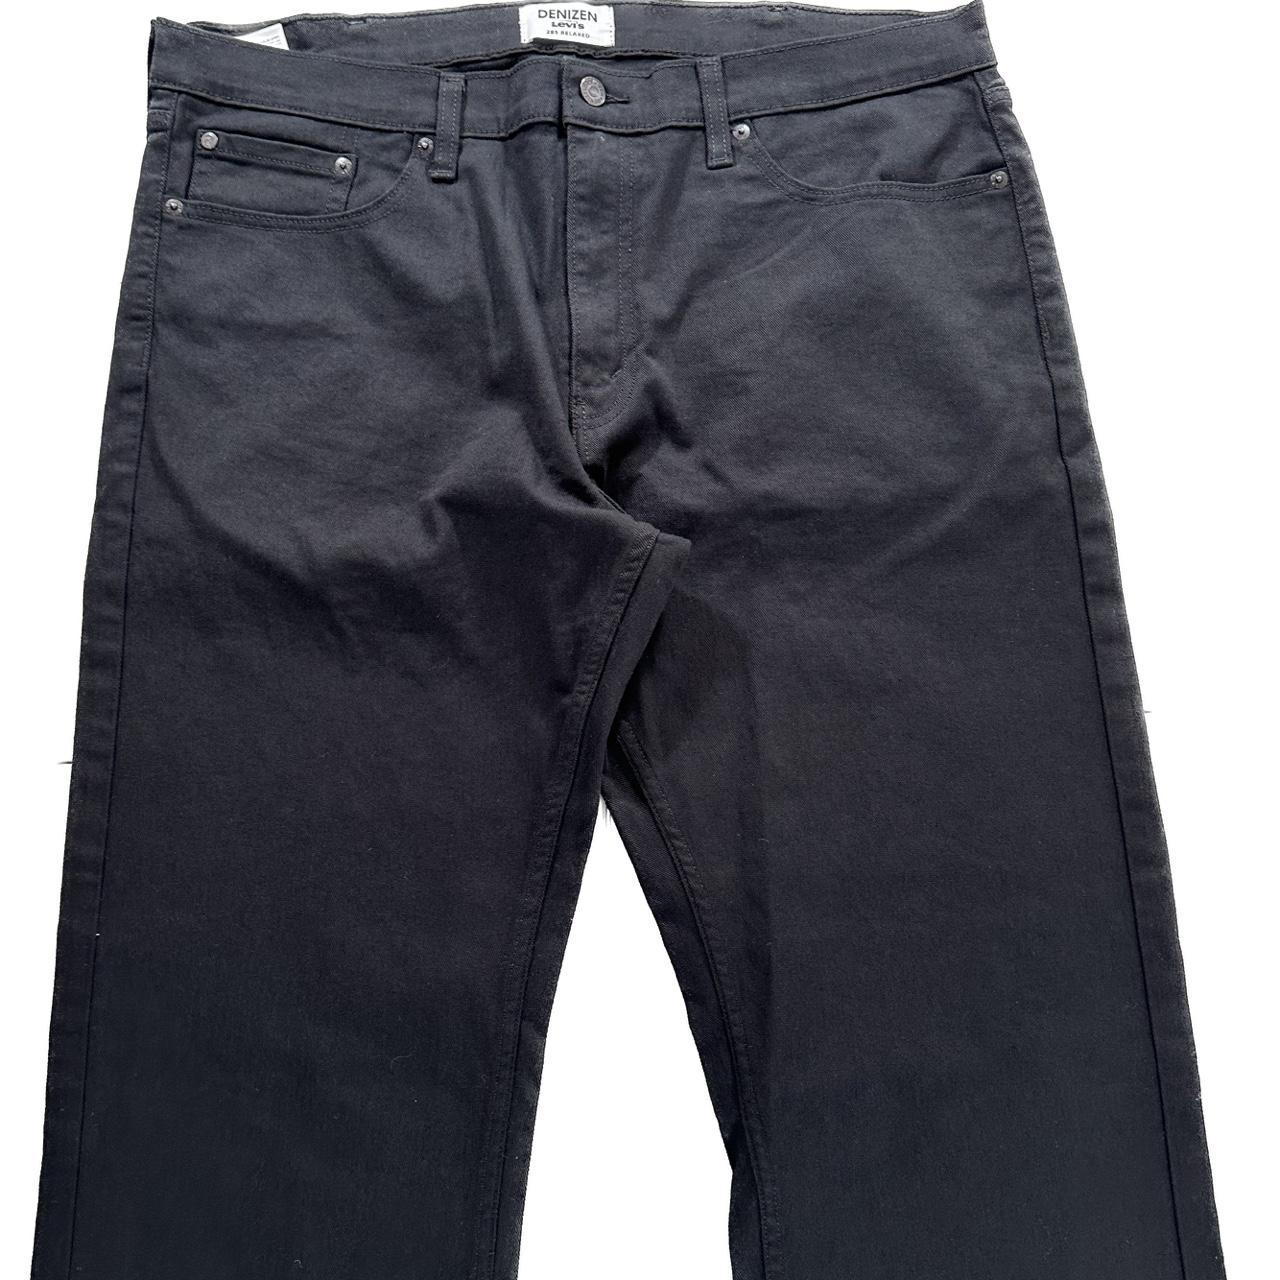 Levi’s Jeans Black Denim Pants 38x34 Denizen 285... - Depop